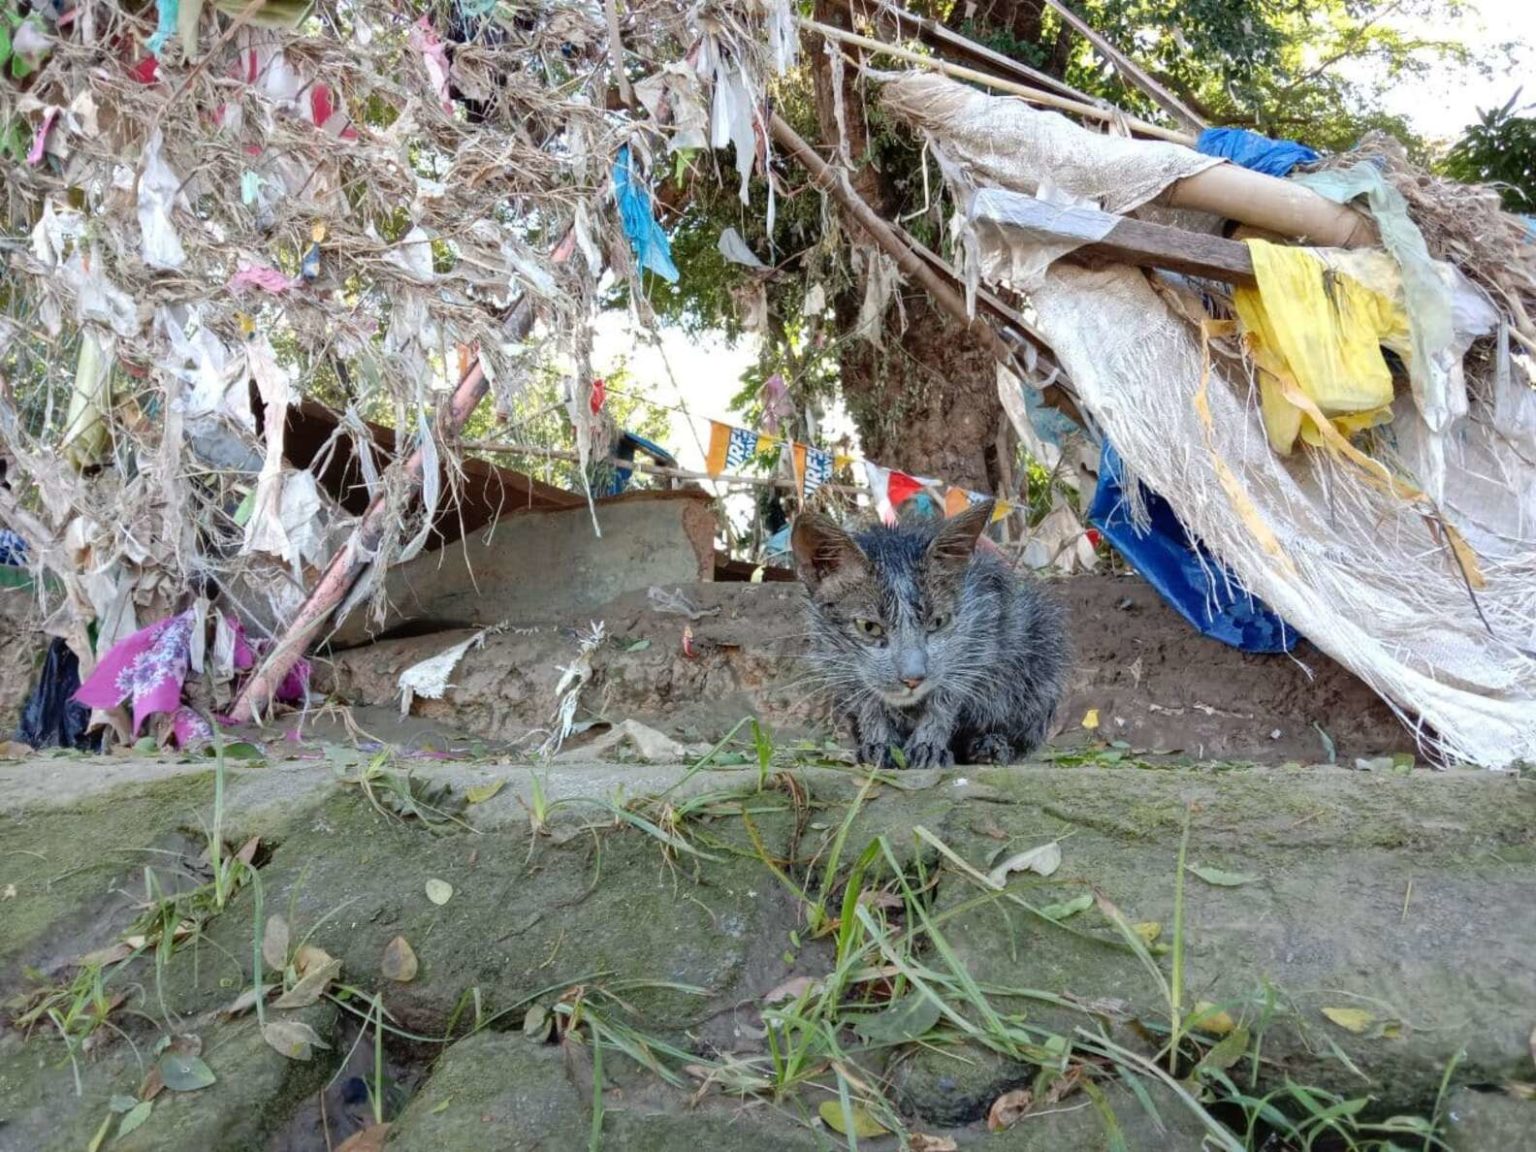 Возле мусорных баков девушка нашла бездомную грязную кошку. Ее накормили и отмыли, теперь эту красотку не узнать